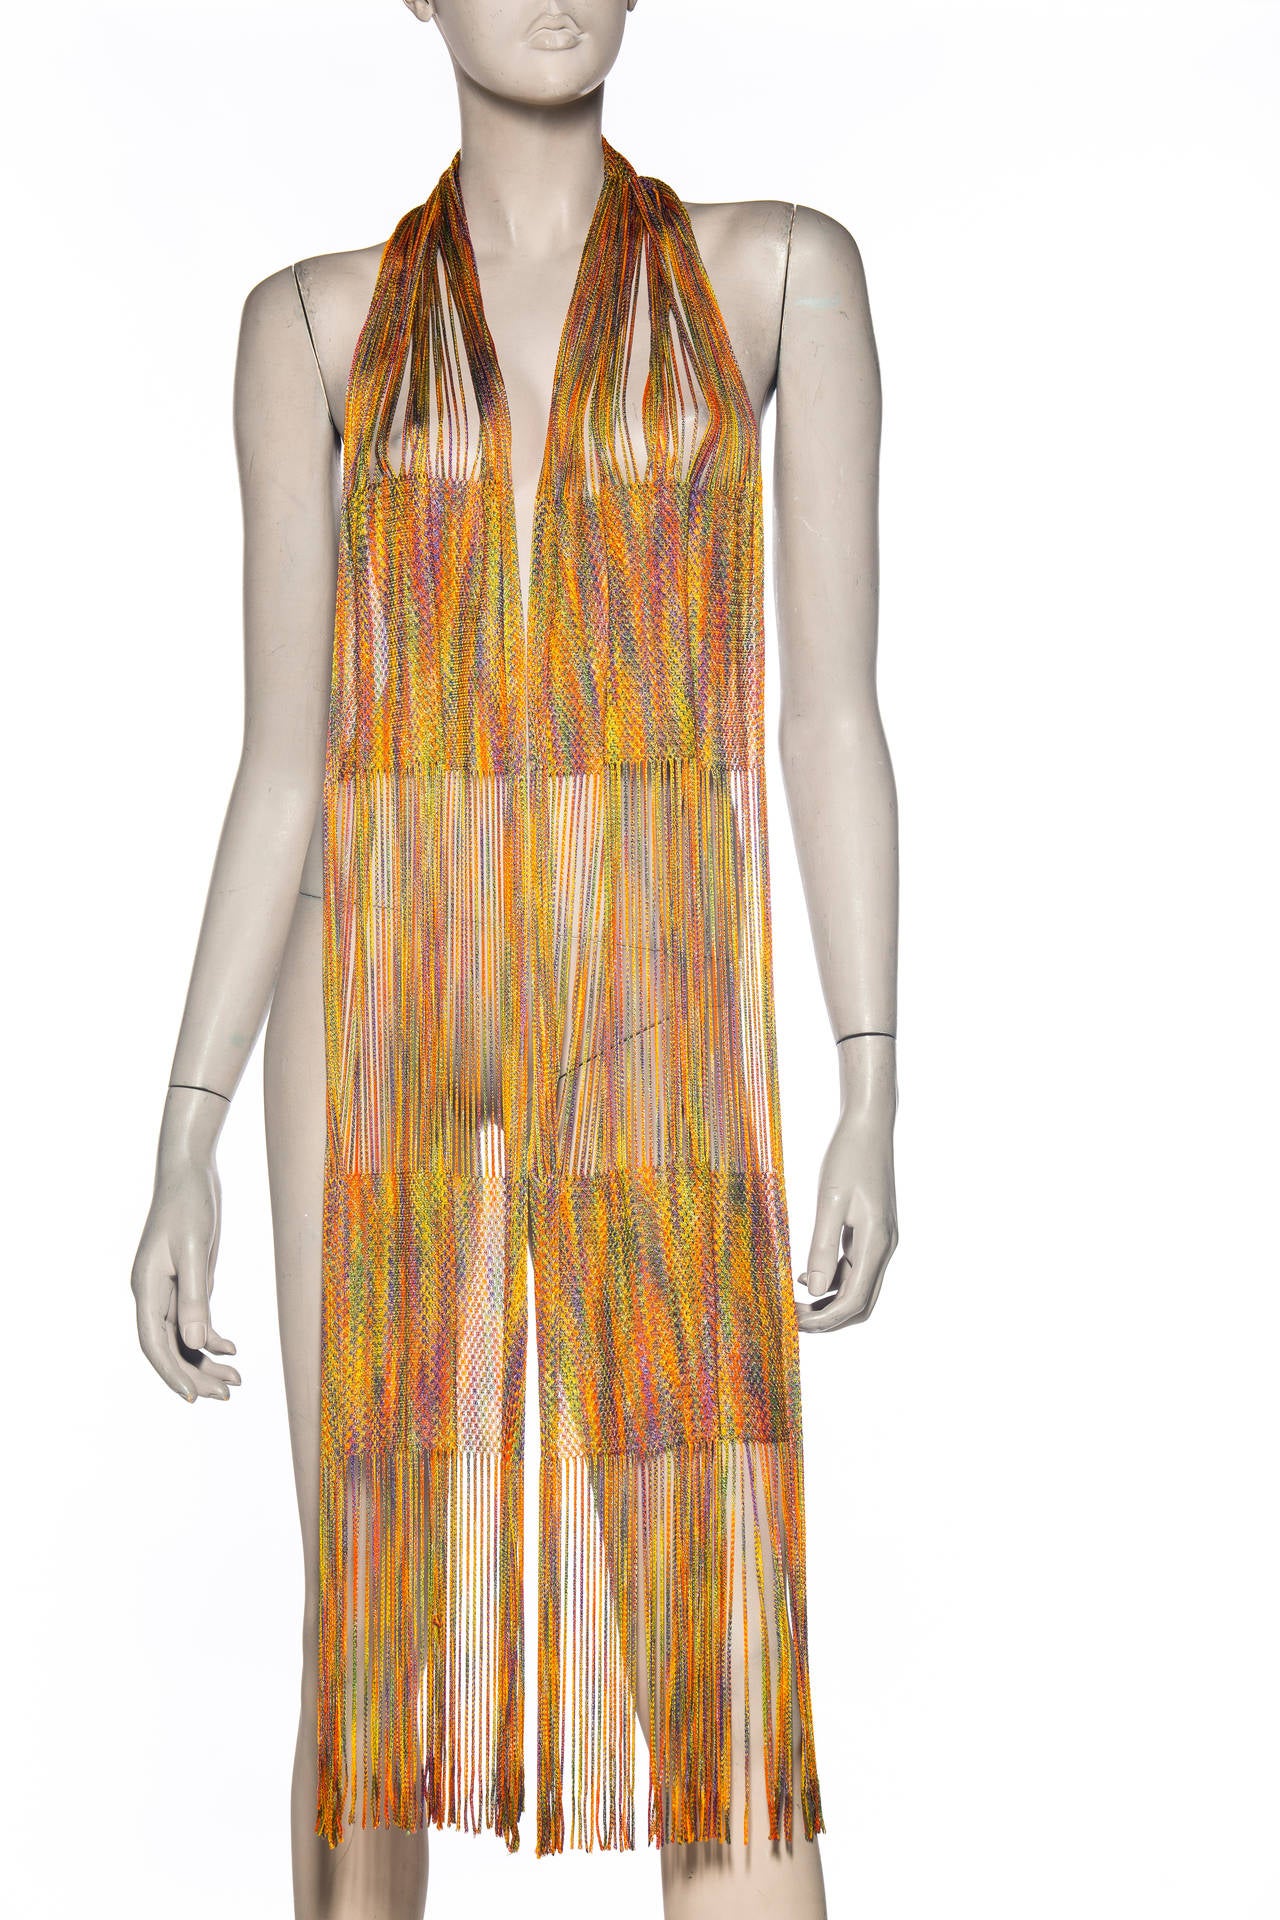 Missoni Rainbow Striped Knit Pant Suit Ensemble, Circa 1970's For Sale 2